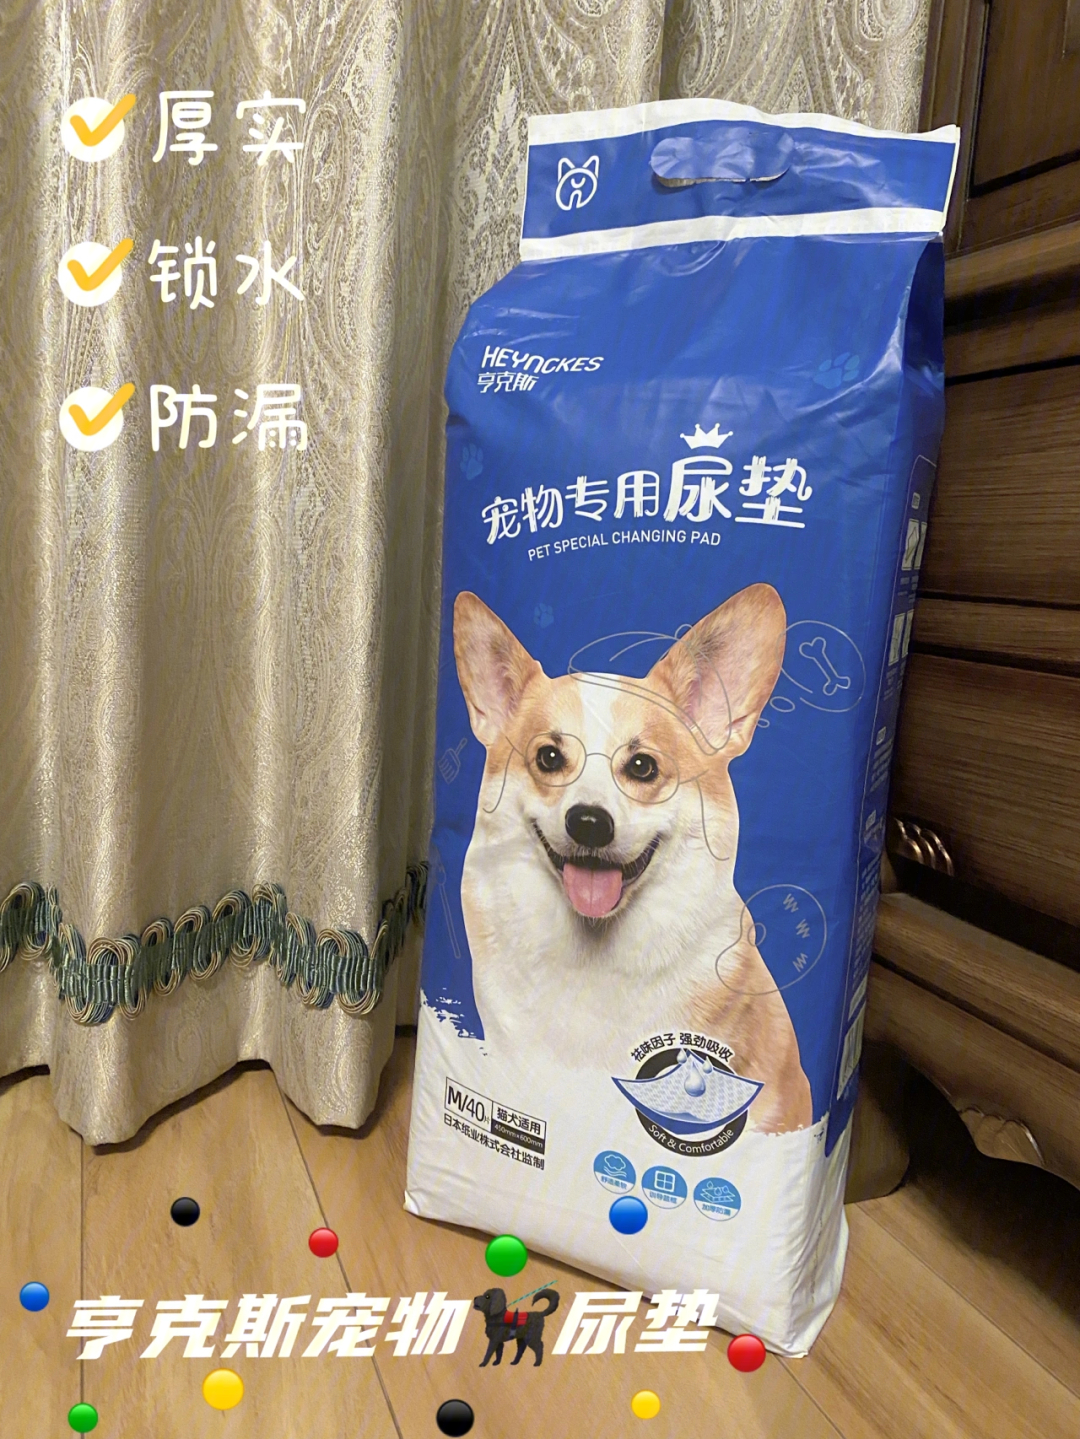 宠物尿垫的正确垫法图片